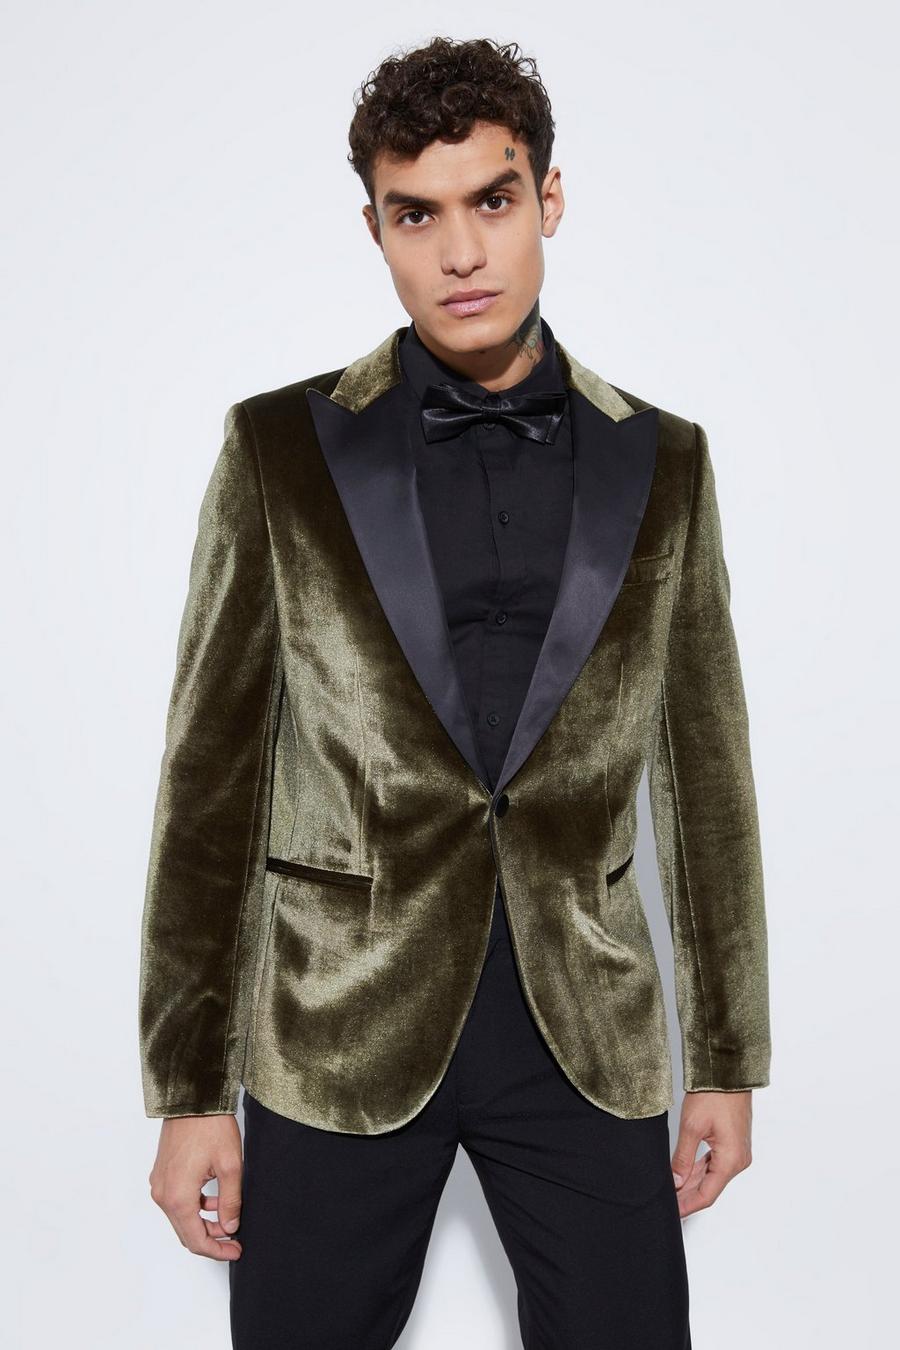 Men's Blazers, Men's Suit Jackets